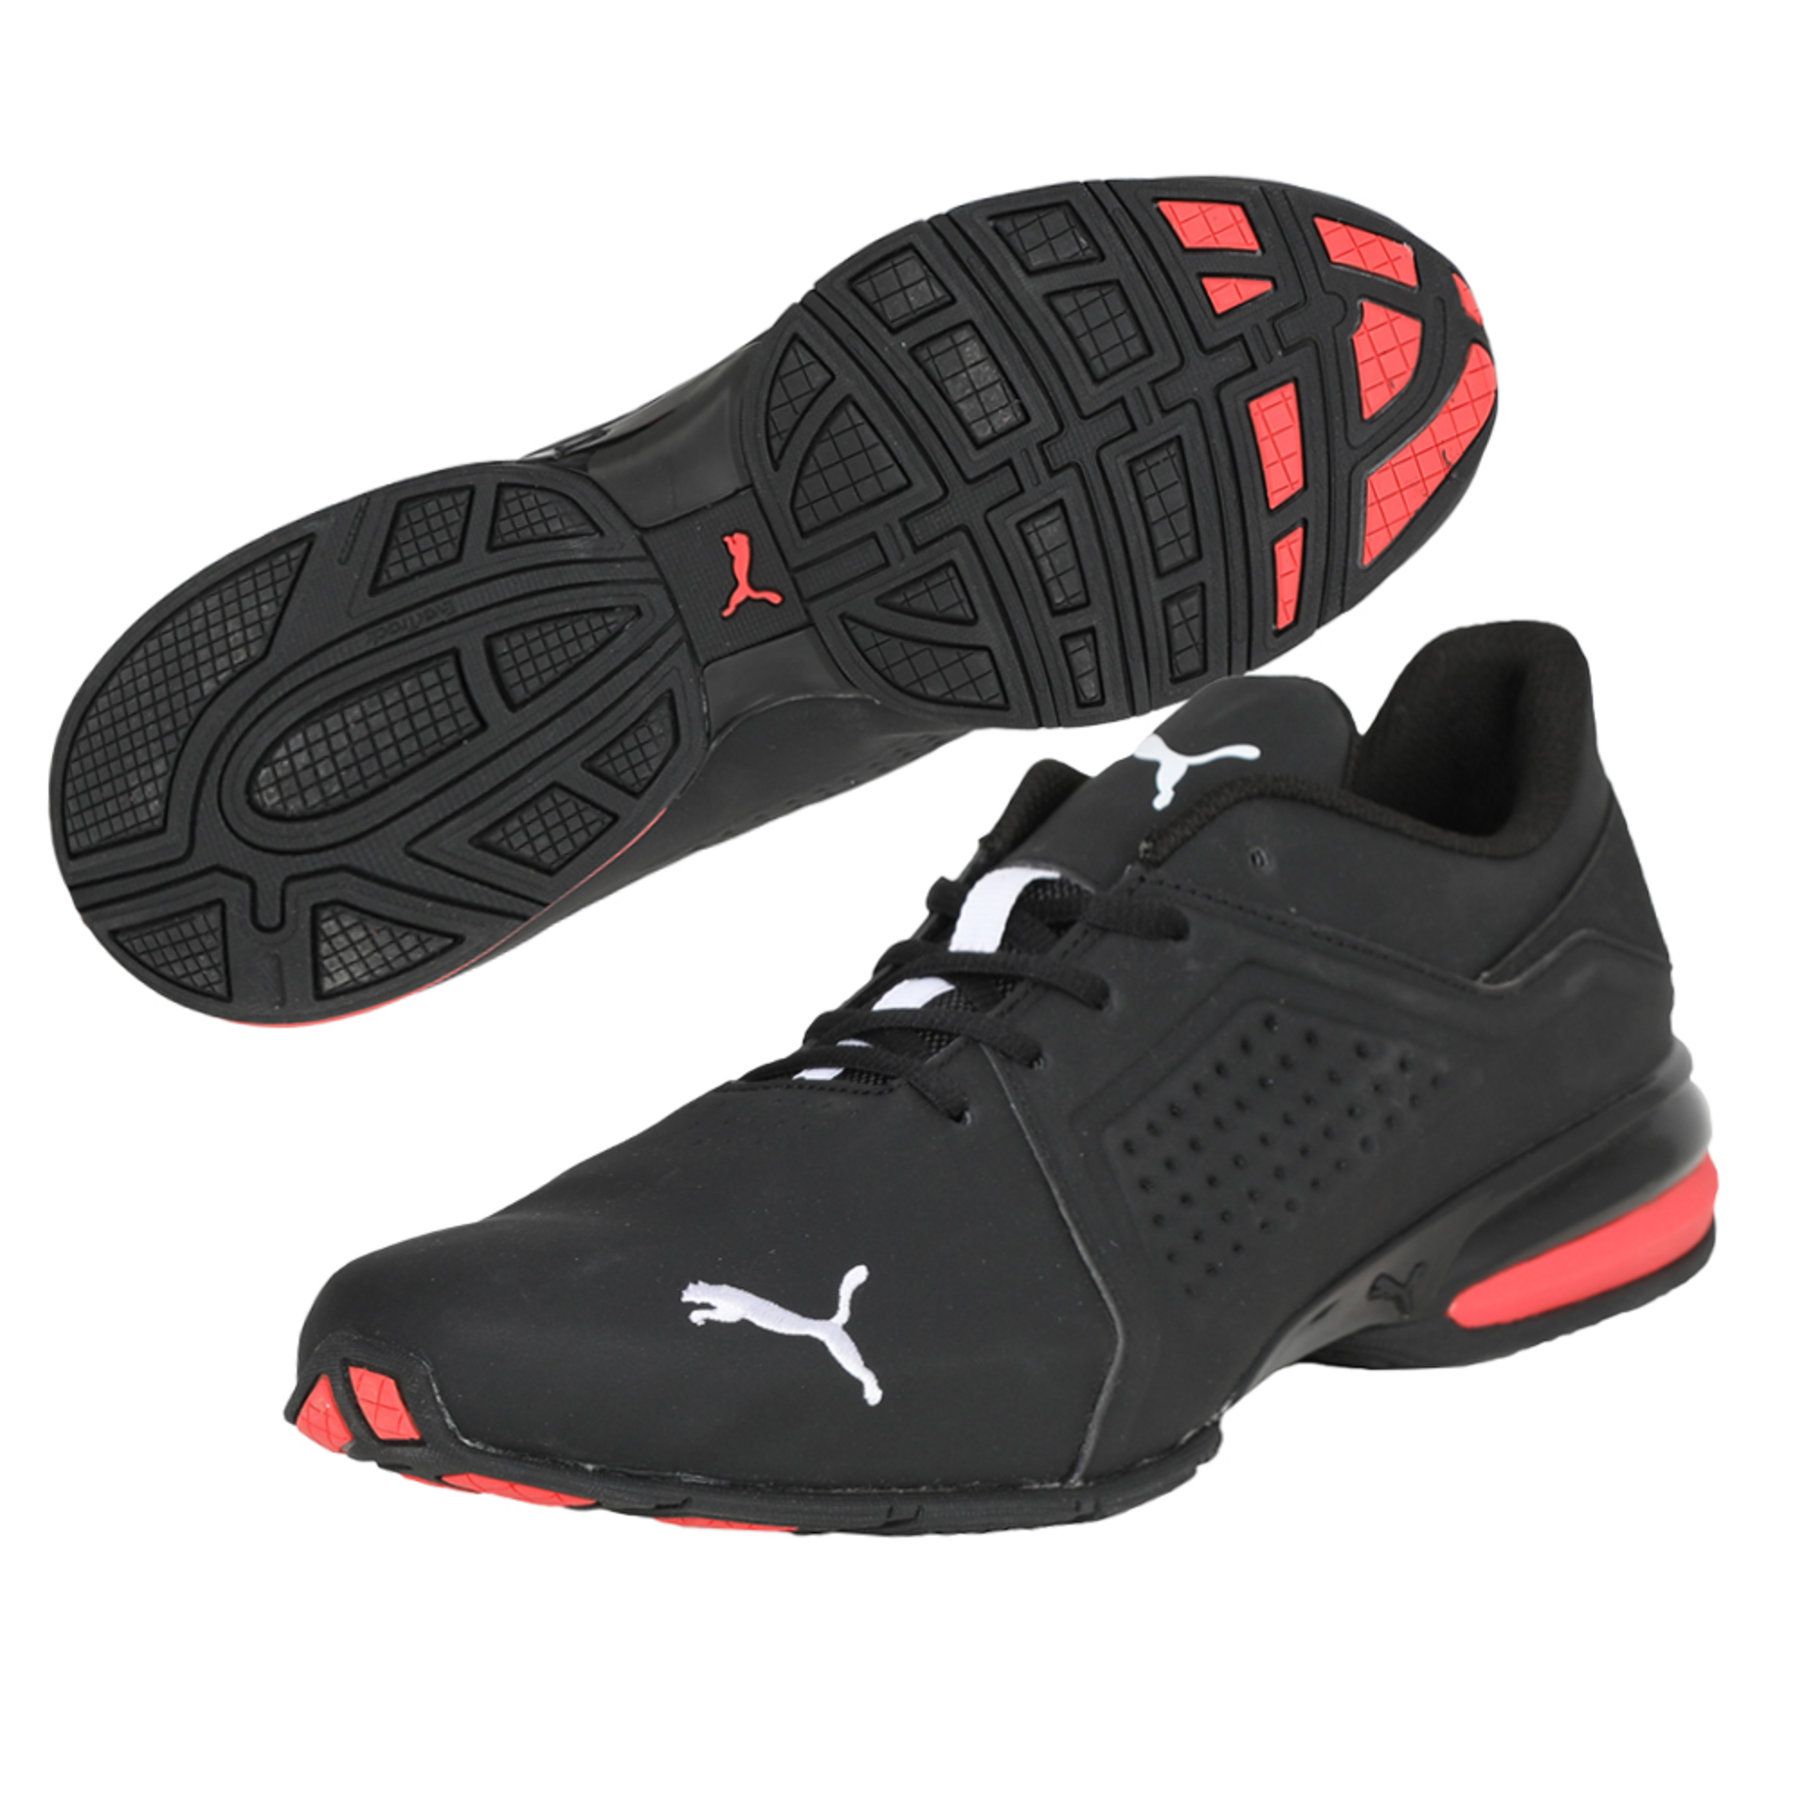 Puma Viz Runner Sneakers Black Casual Shoes - Buy Puma Viz Runner ...